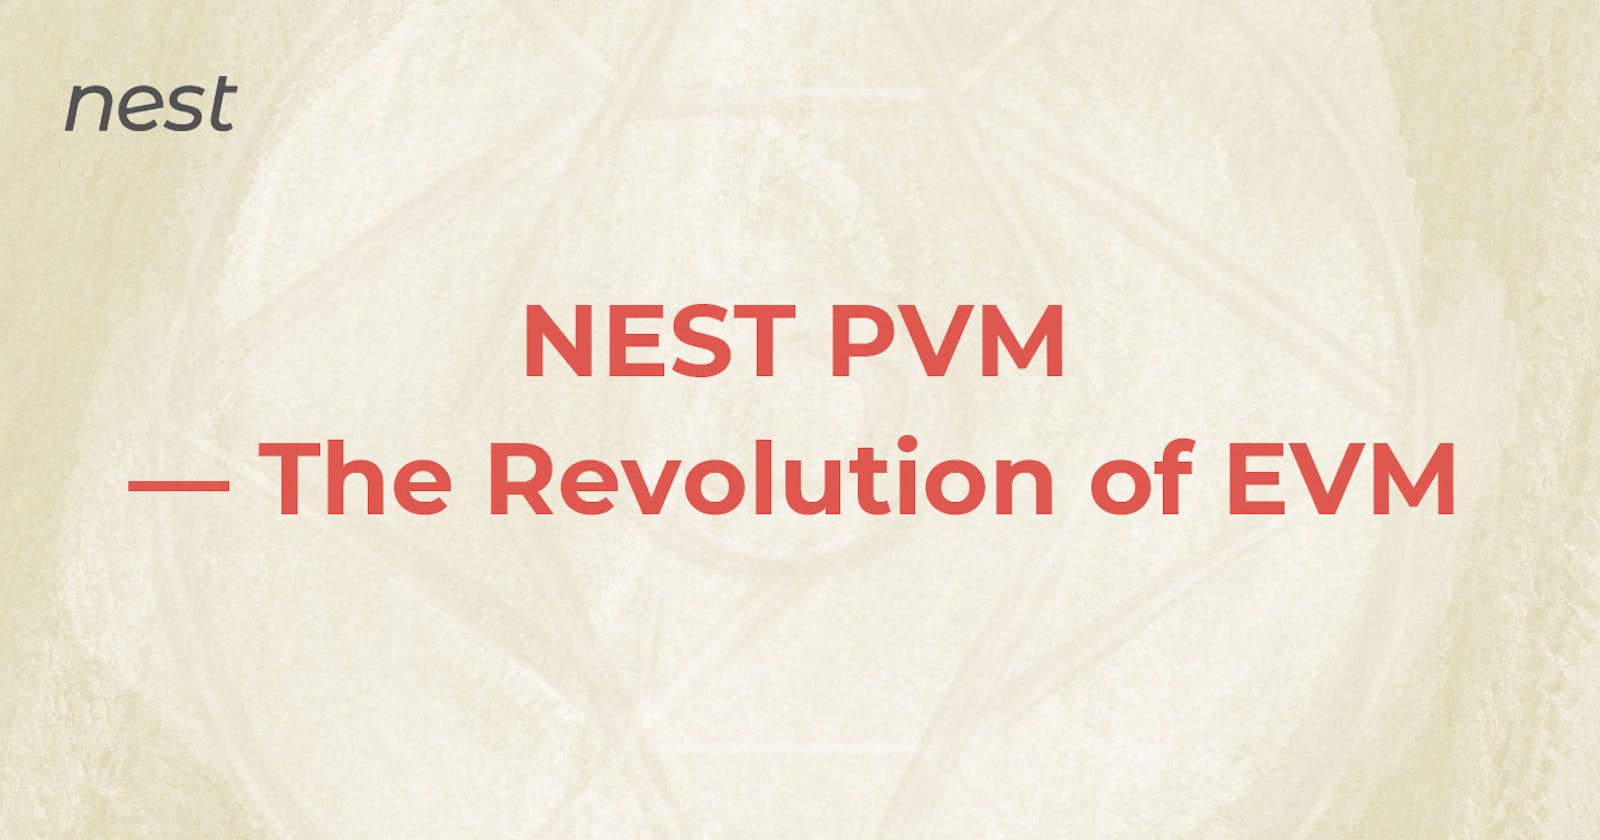 NEST PVM - The Revolution of EVM